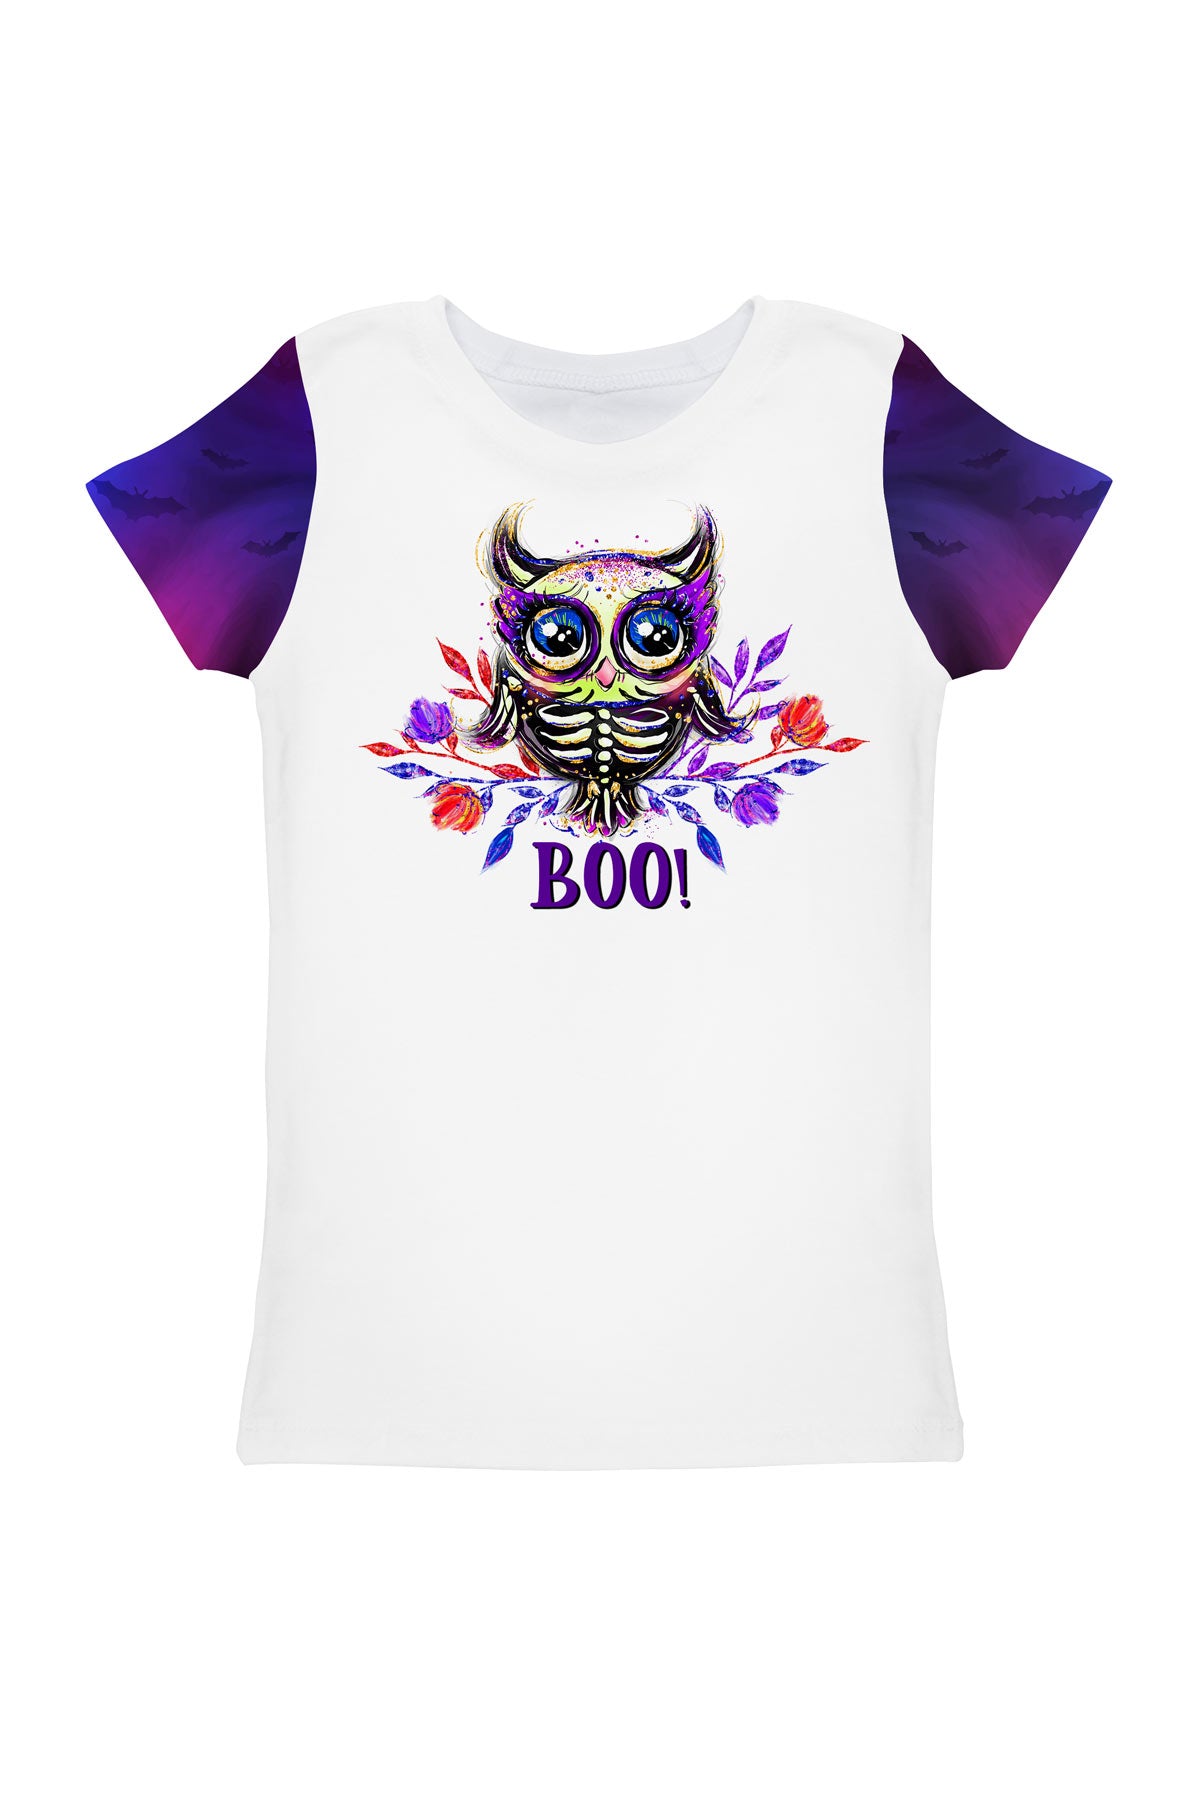 Ghost Town Zoe White Skull Skeleton Boo Print Designer T-Shirt - Girls - Pineapple Clothing